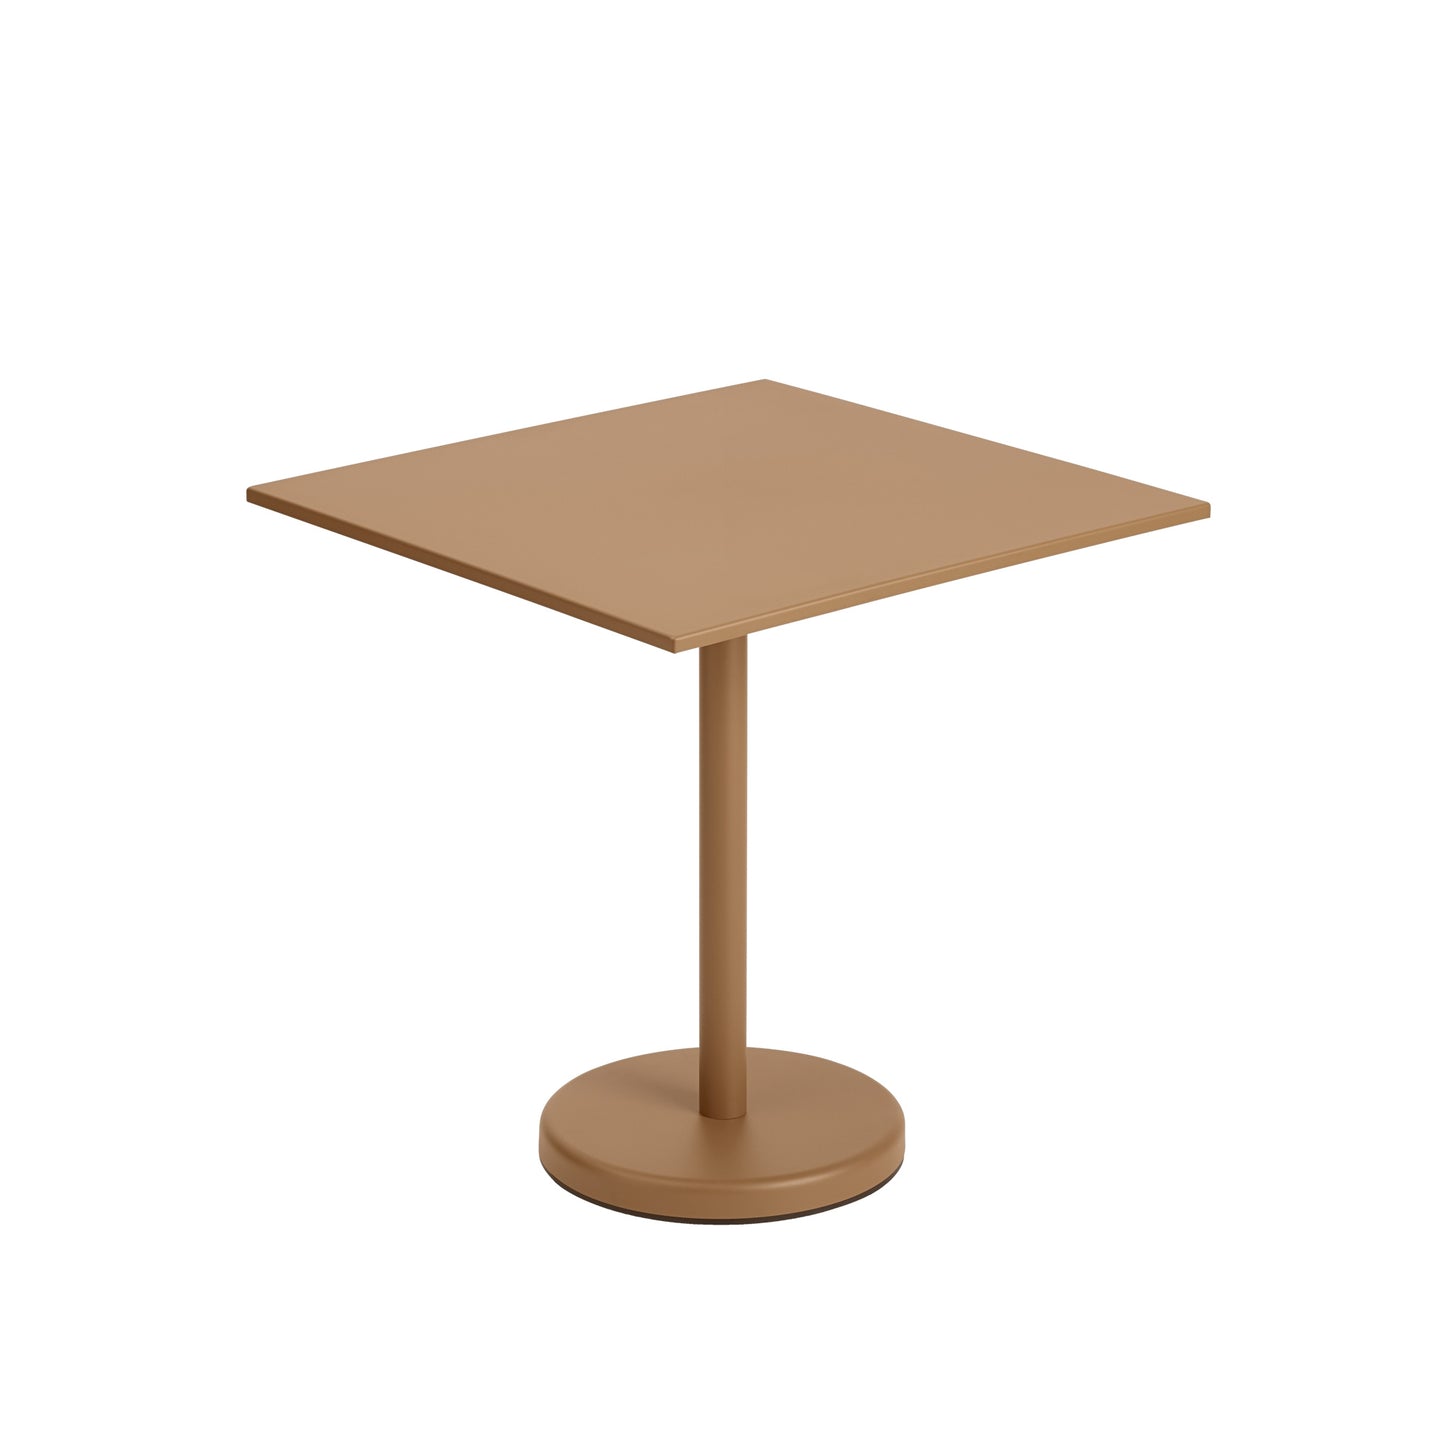 Linear Steel Café Garden Table 70 X 70 cm by Muuto #Roasted Orange